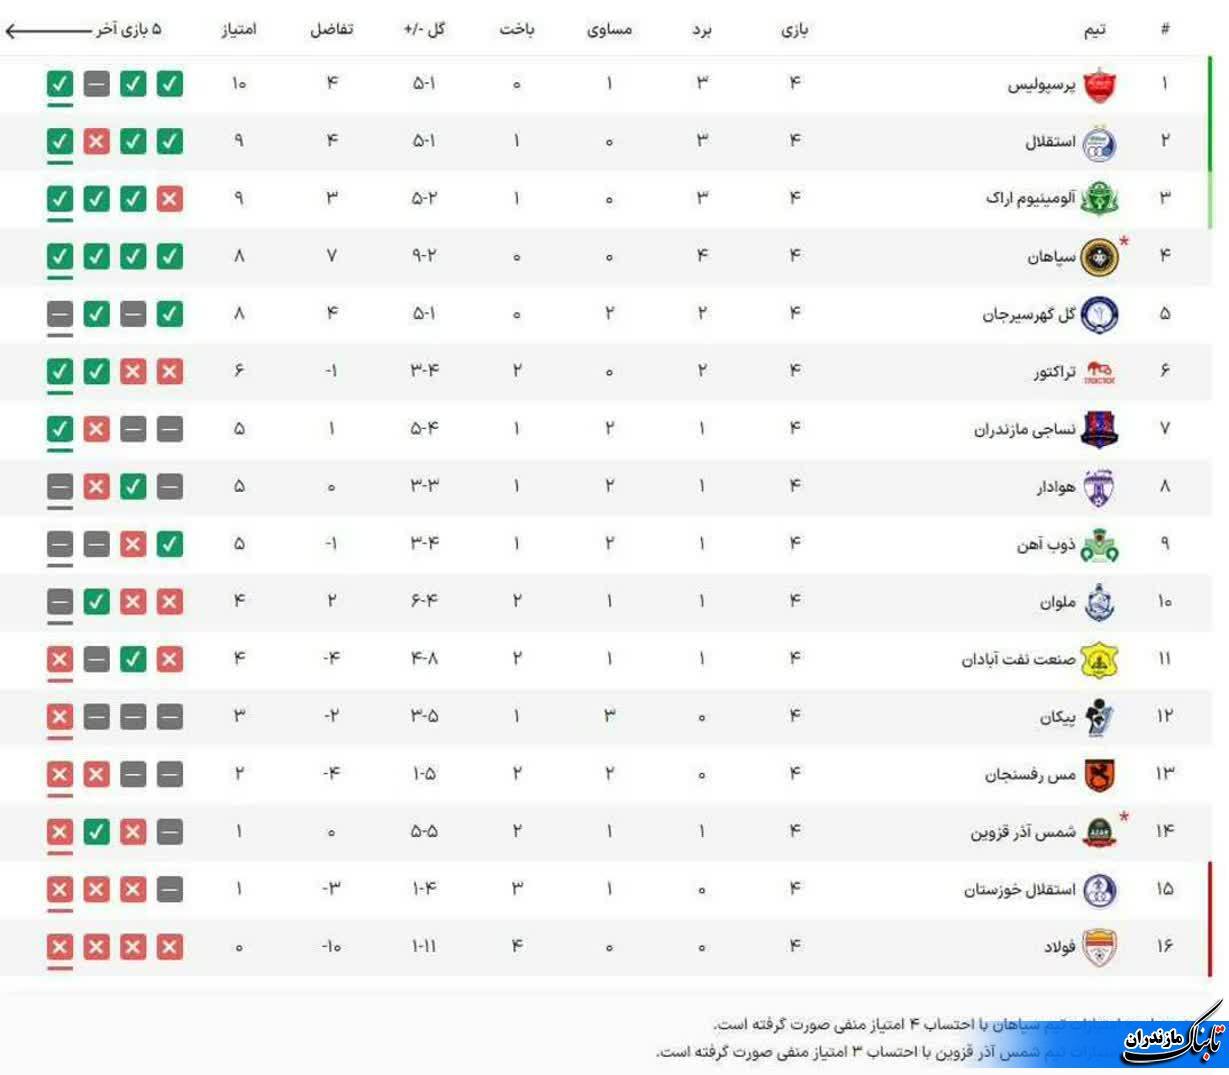 کمیته انضباطی ۴ امتیاز از تیم سپاهان کم کرد+ جدول جدید لیگ برتر فوتبال